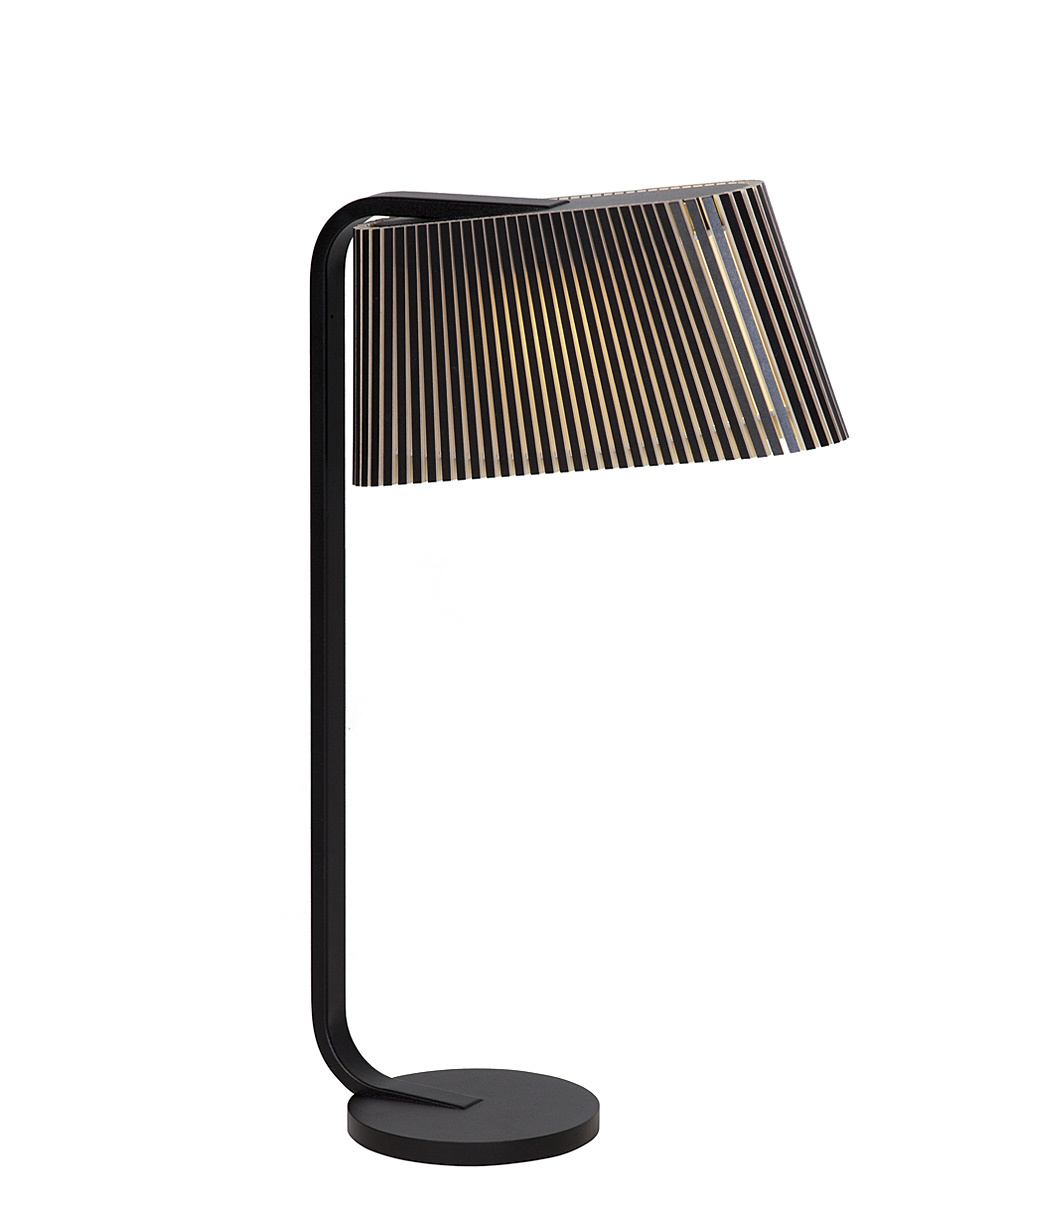 Lampe de table Owalo 7020 est disponible en stratifié noir